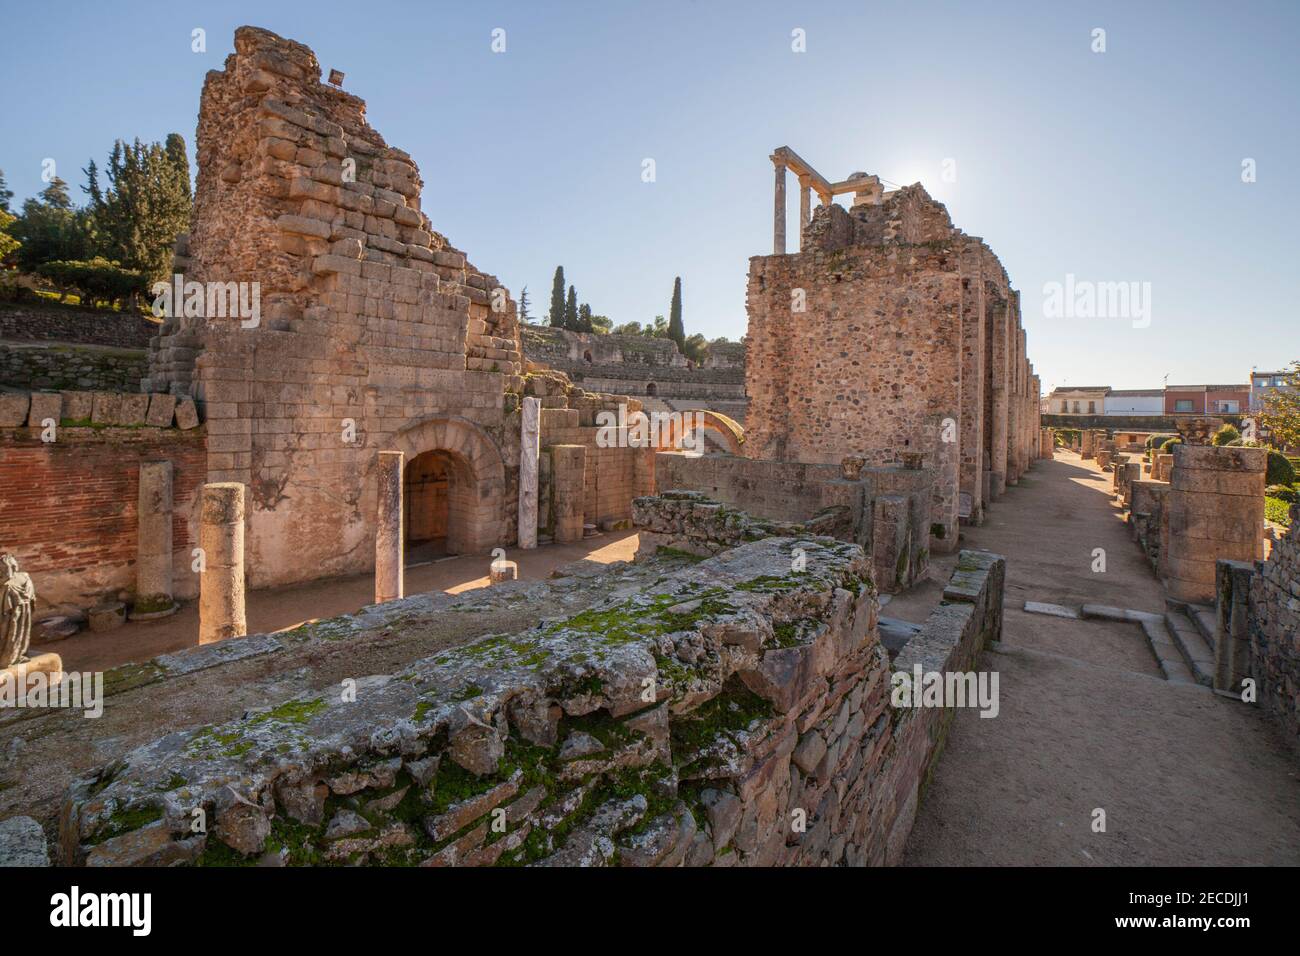 Accesso est del teatro romano di Merida. Uno dei siti archeologici più grandi e estesi d'Europa. Accesso ovest. Extremadura, Spagna Foto Stock